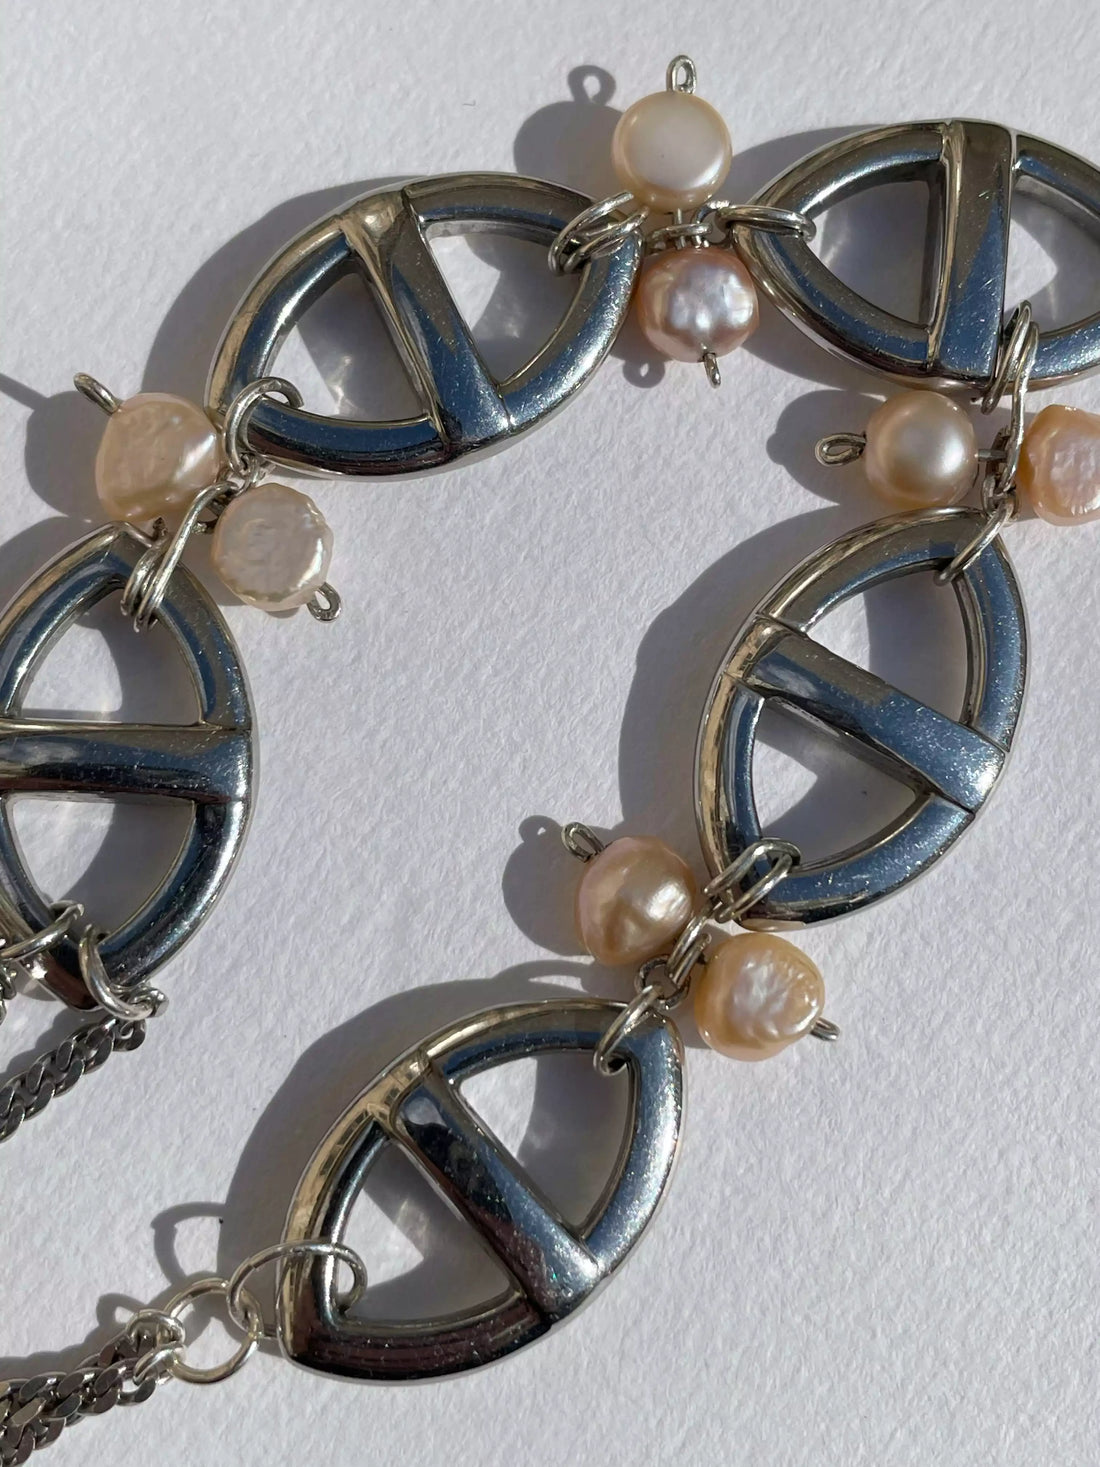 Gros plan des détails du collier fait main. On voit l'assemblage des perles d'eau douce sur les maillons marines en argent.